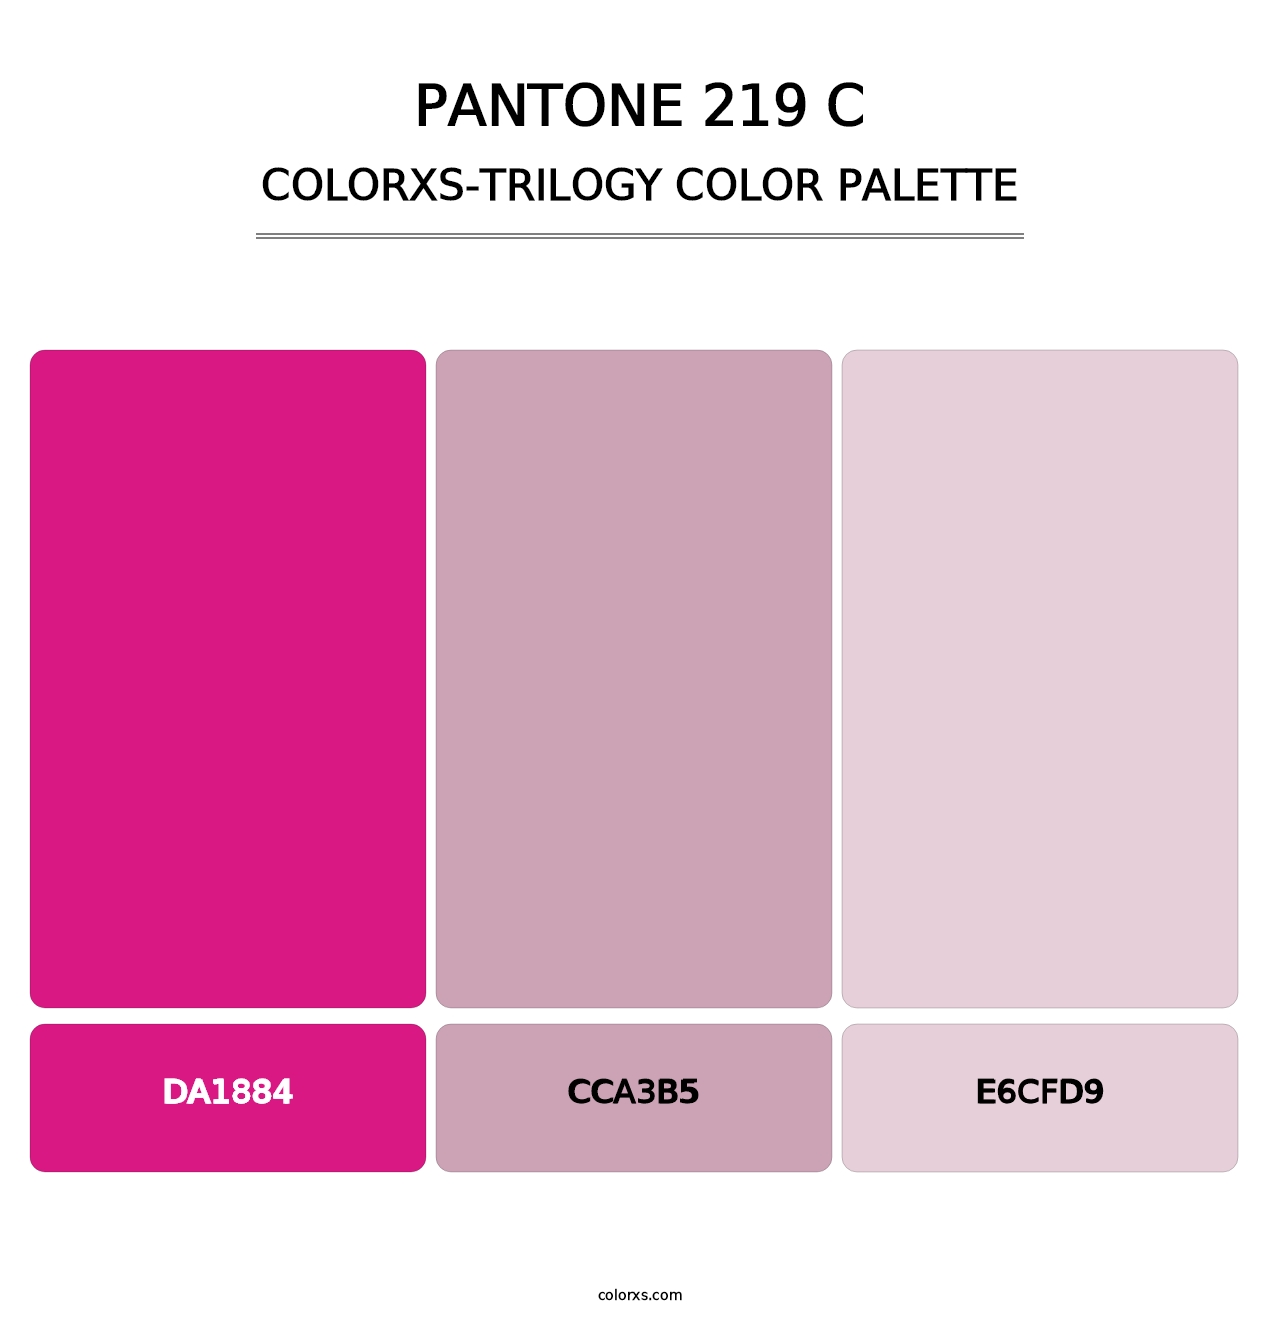 PANTONE 219 C - Colorxs Trilogy Palette